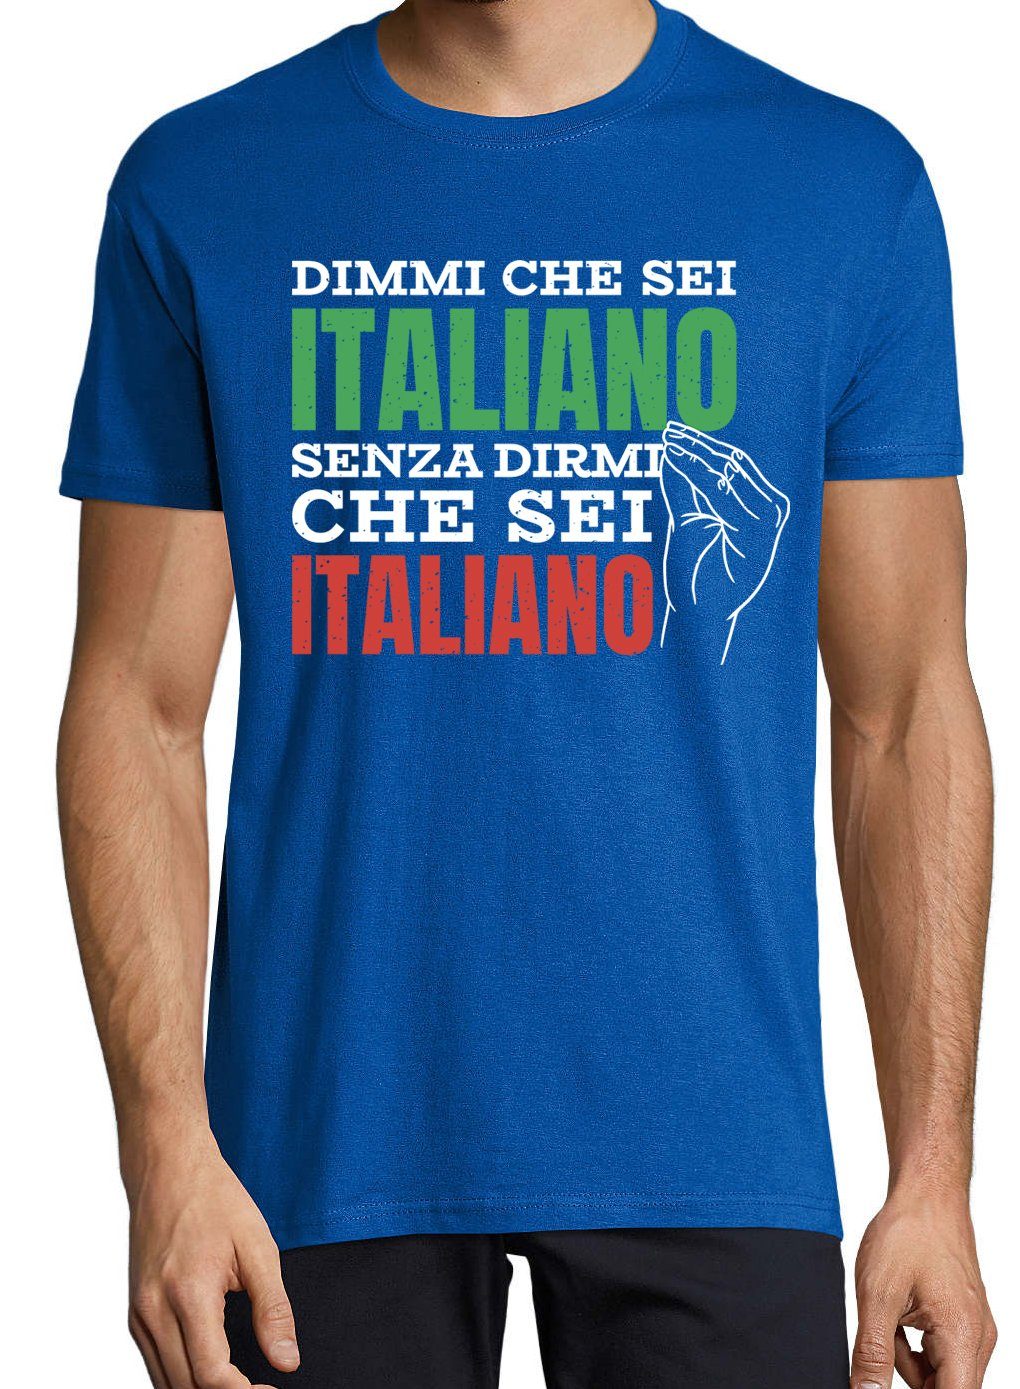 Zu Dass Italiener Frontprint Ohne Es lustigem Royalblau T-Shirt Mir Designz Sagen" Mir Youth "Sag Bist, mit Shirt Herren Du